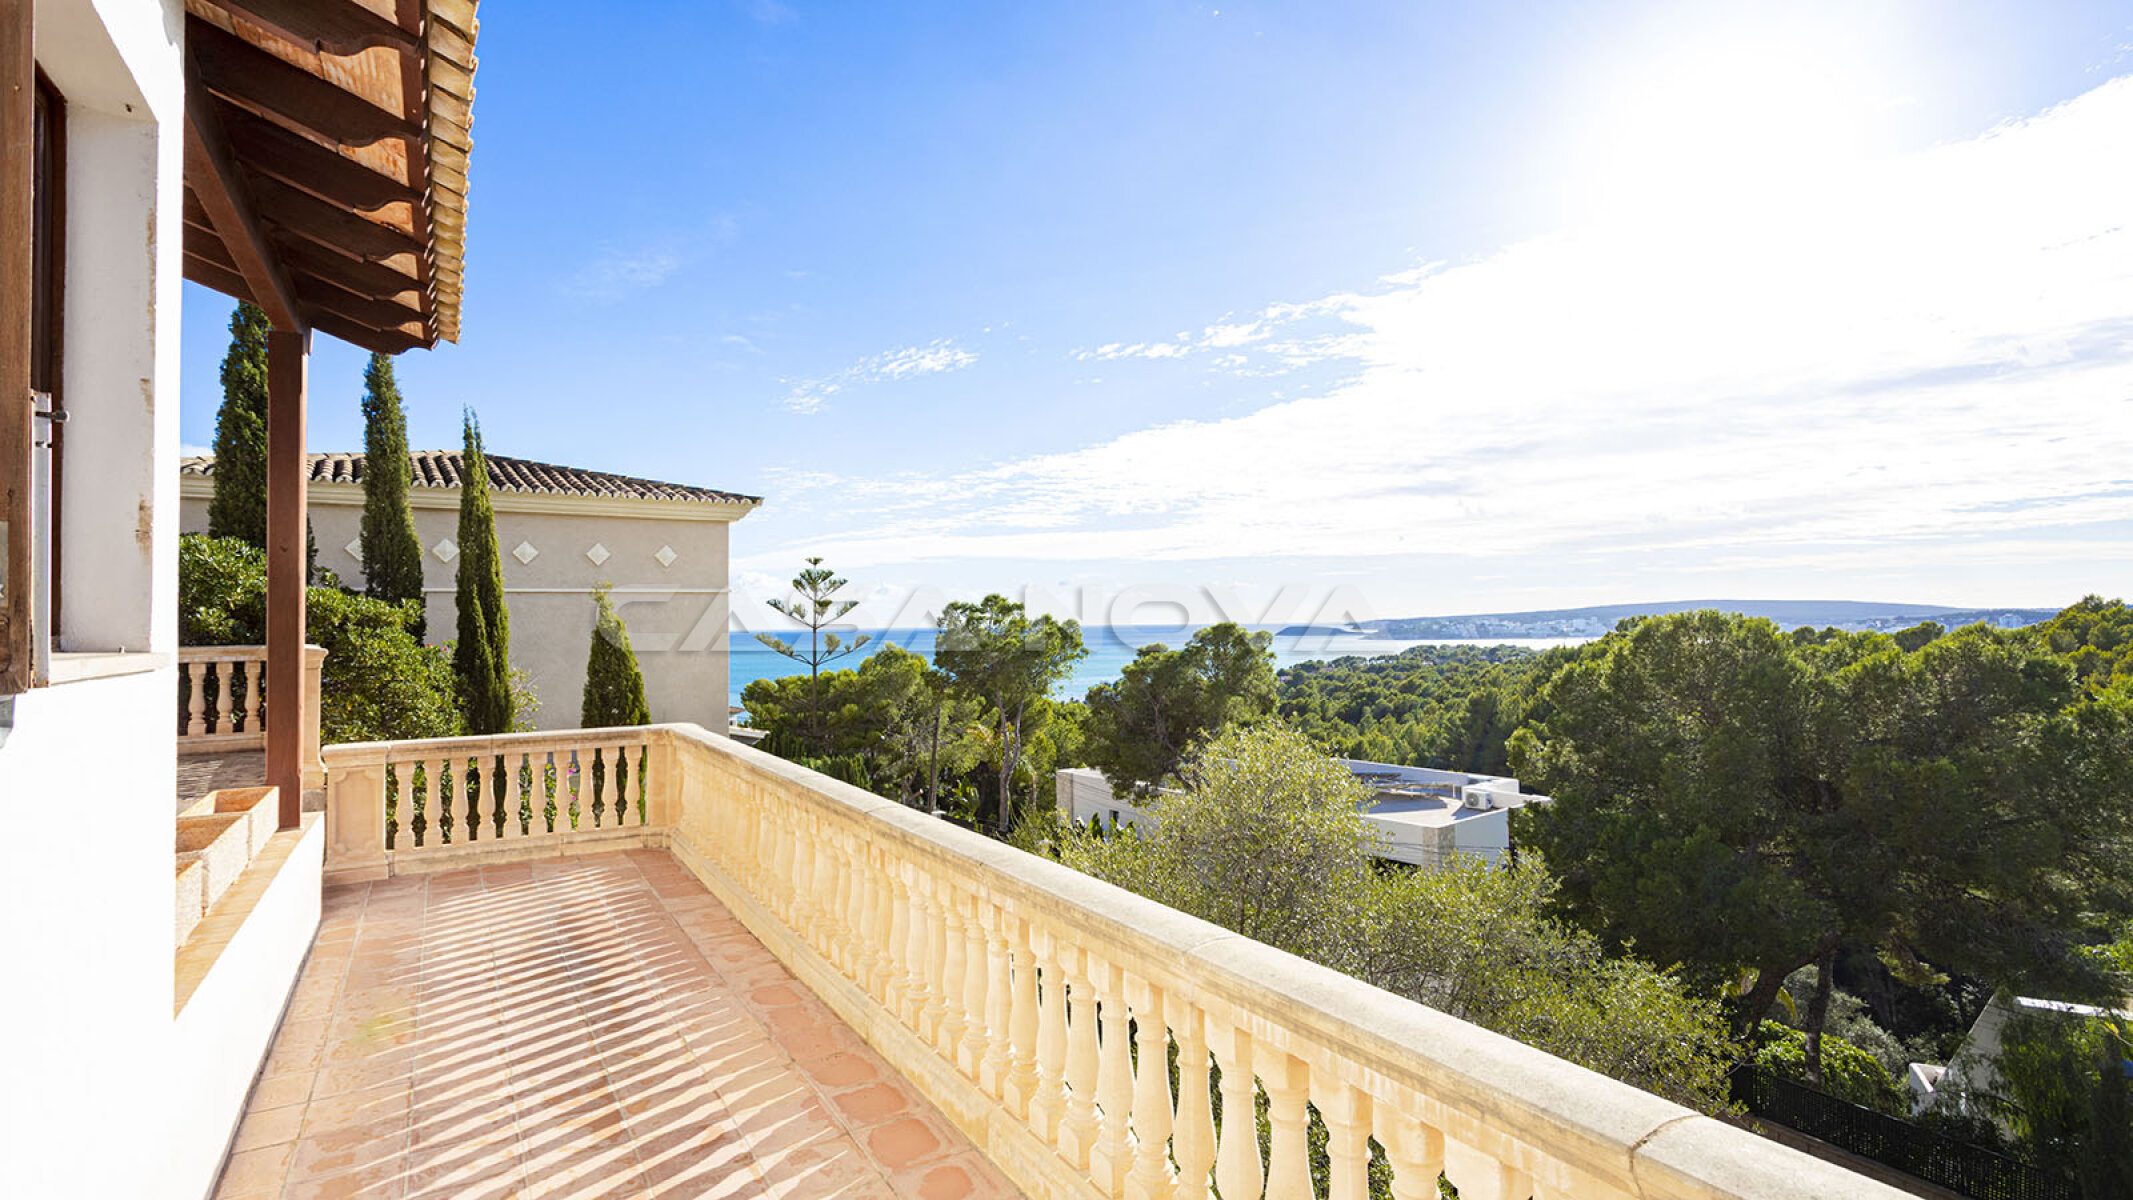 Mediterranean sea view villa with great potential